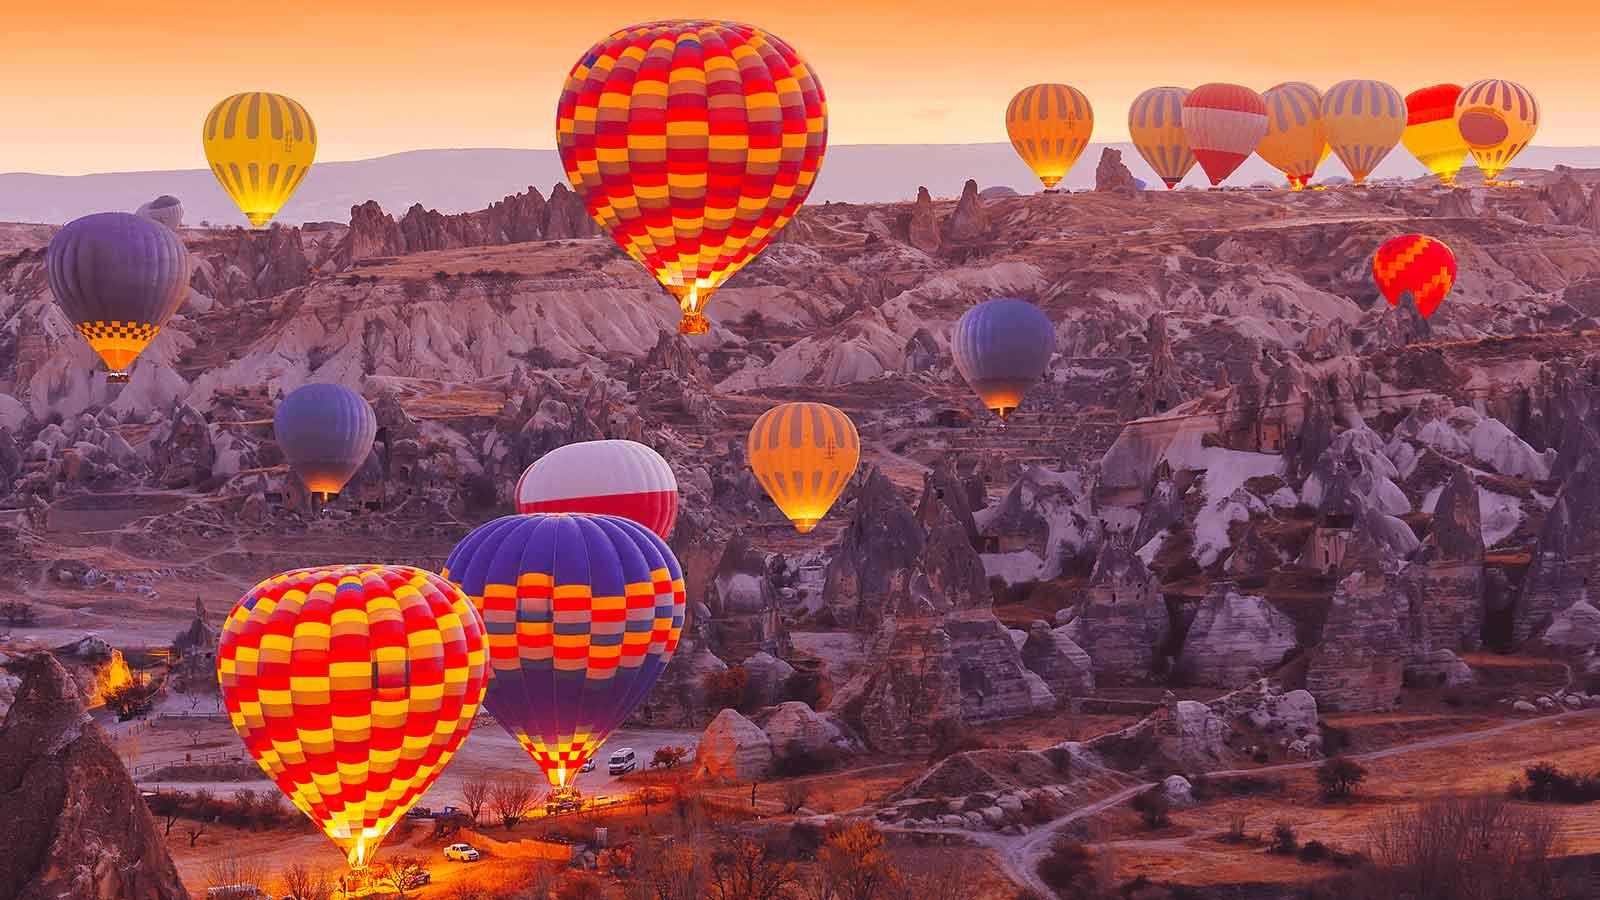 Cappadocia-Hot-Air-Balloon-Ride-1